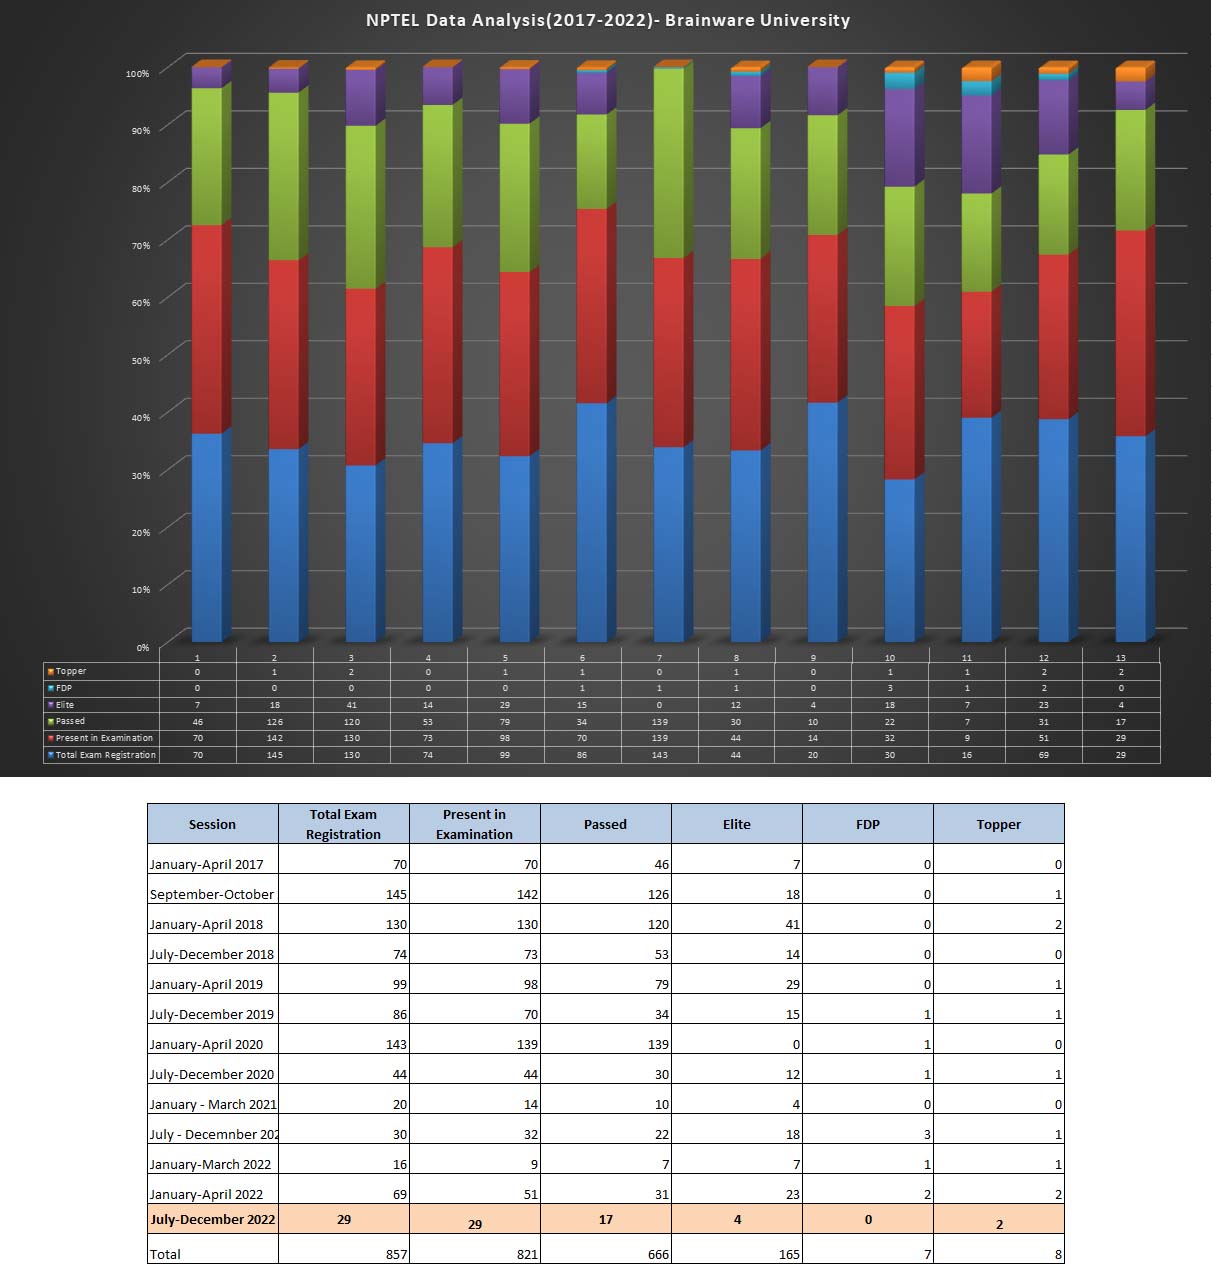 NPTEL Data Analysis chart 2017-2022